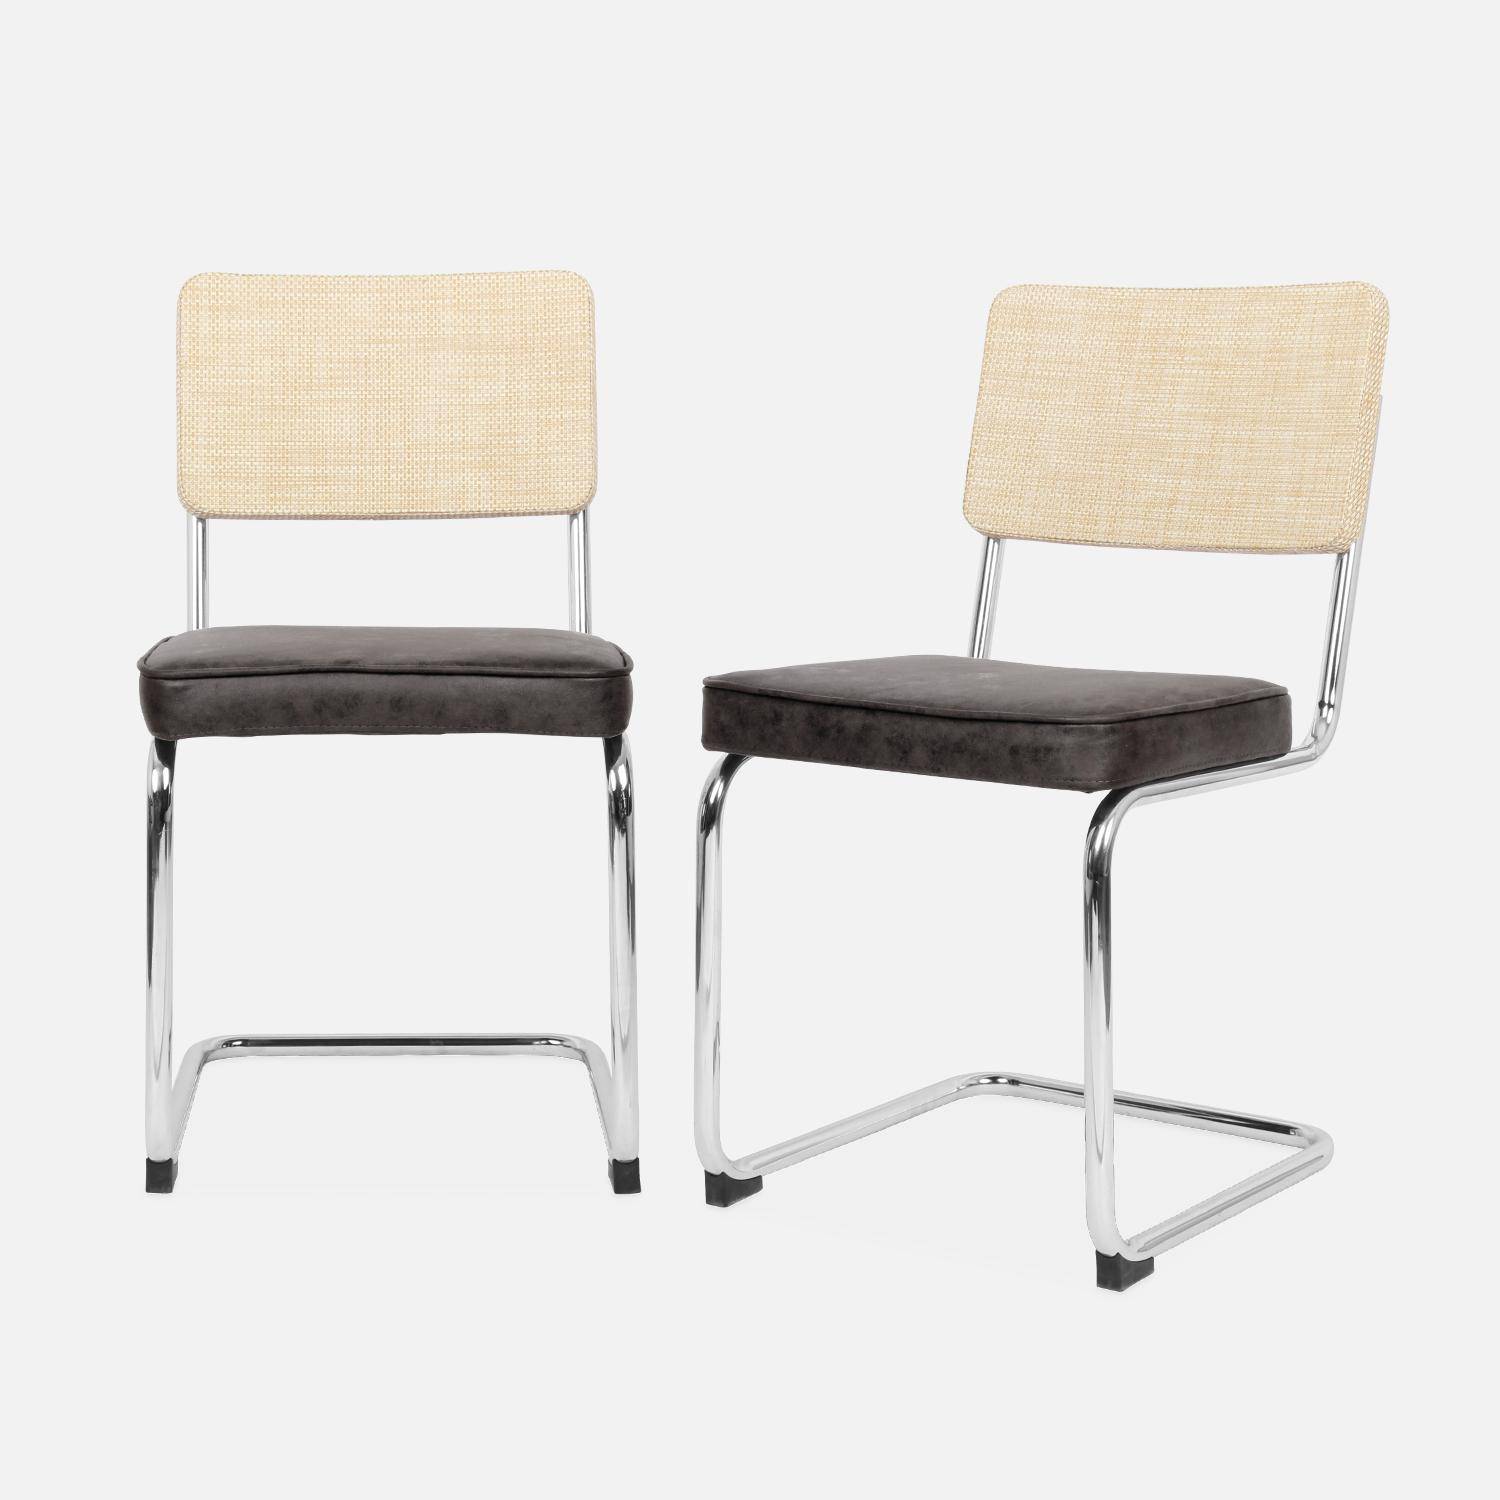 2 chaises cantilever - Maja - tissu noir et résine effet rotin, 46 x 54,5 x 84,5cm   Photo4